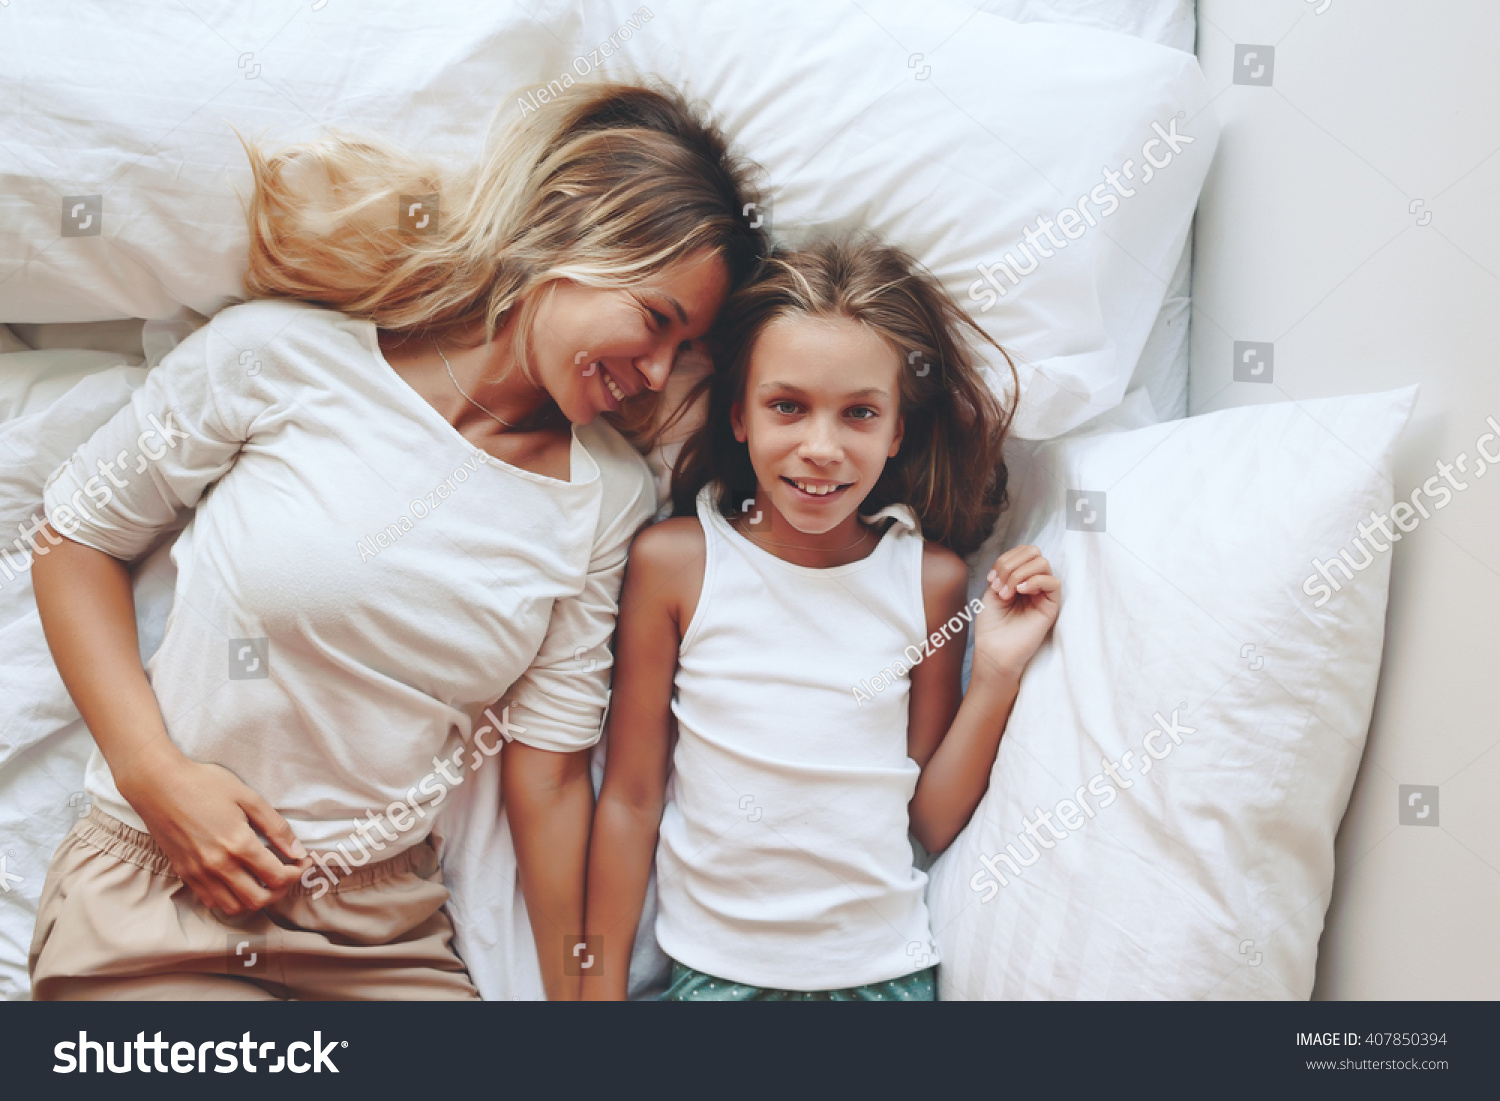 Мама с дочкой фотосессия на кровати